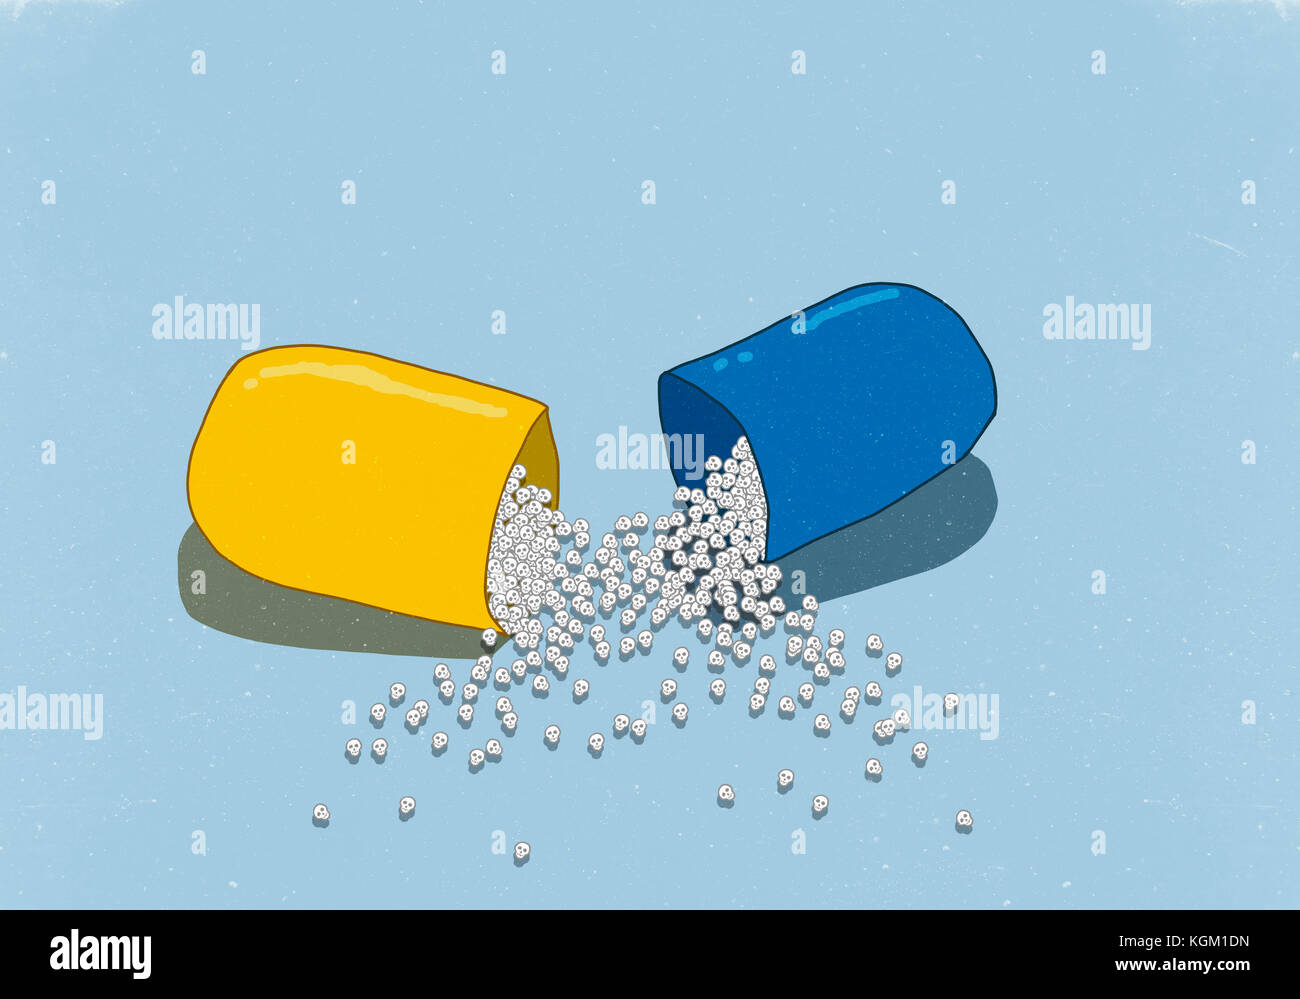 Immagine illustrativa di teschi nella capsula aperta su sfondo blu Foto Stock